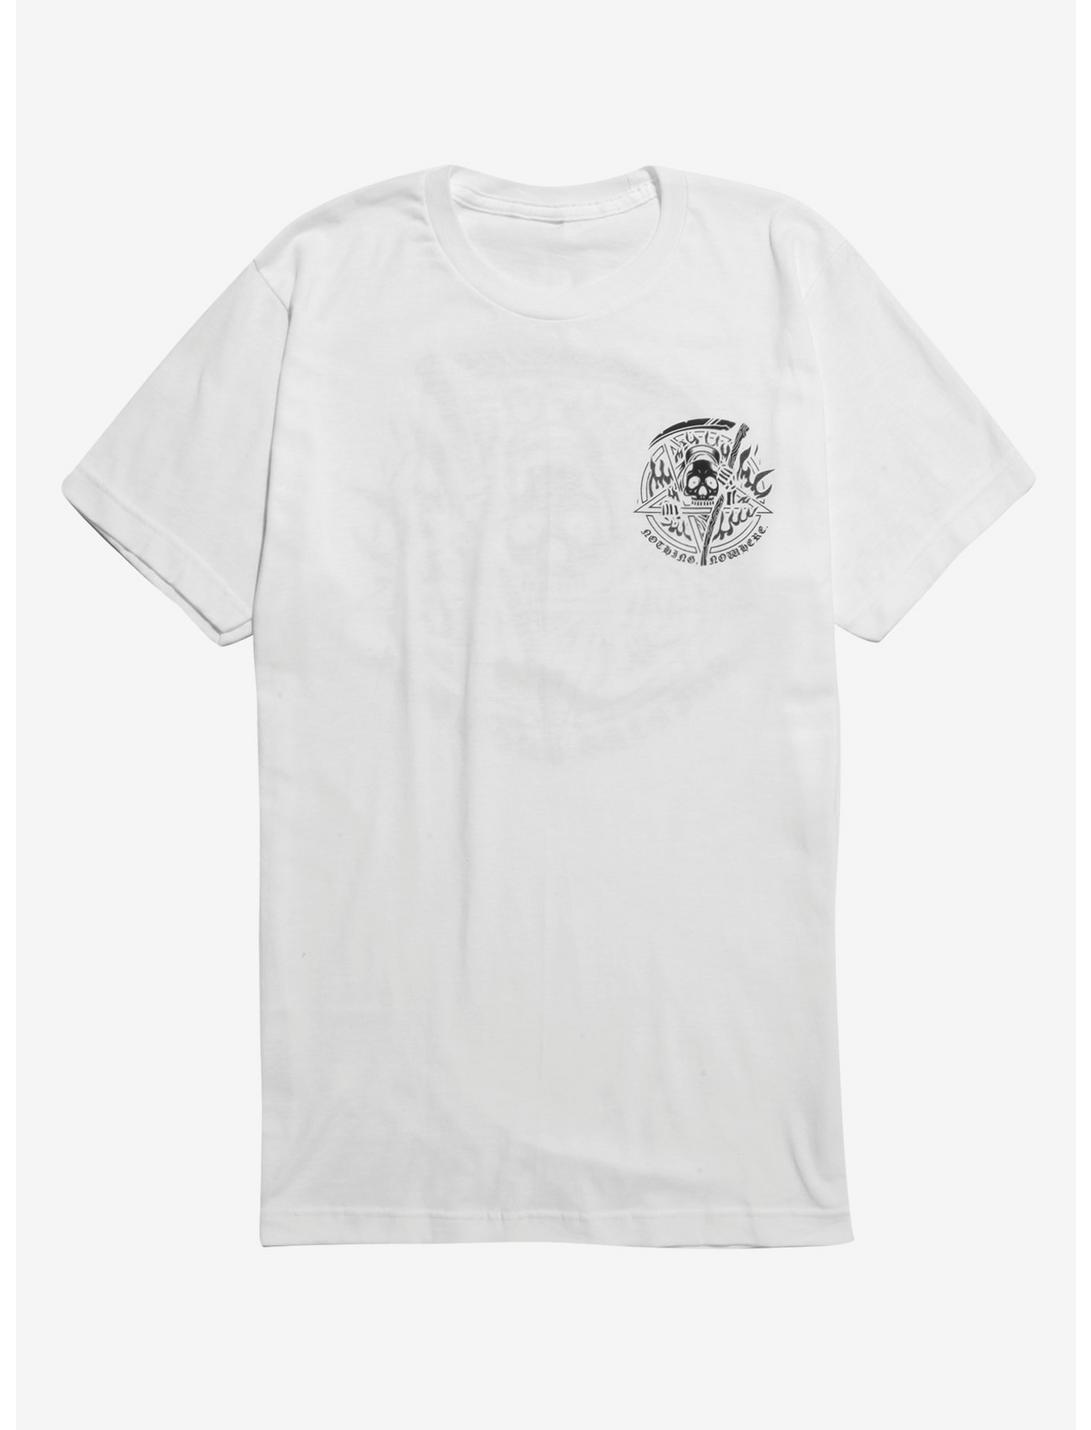 Nothing,Nowhere Pentagram Reaper T-Shirt, WHITE, hi-res